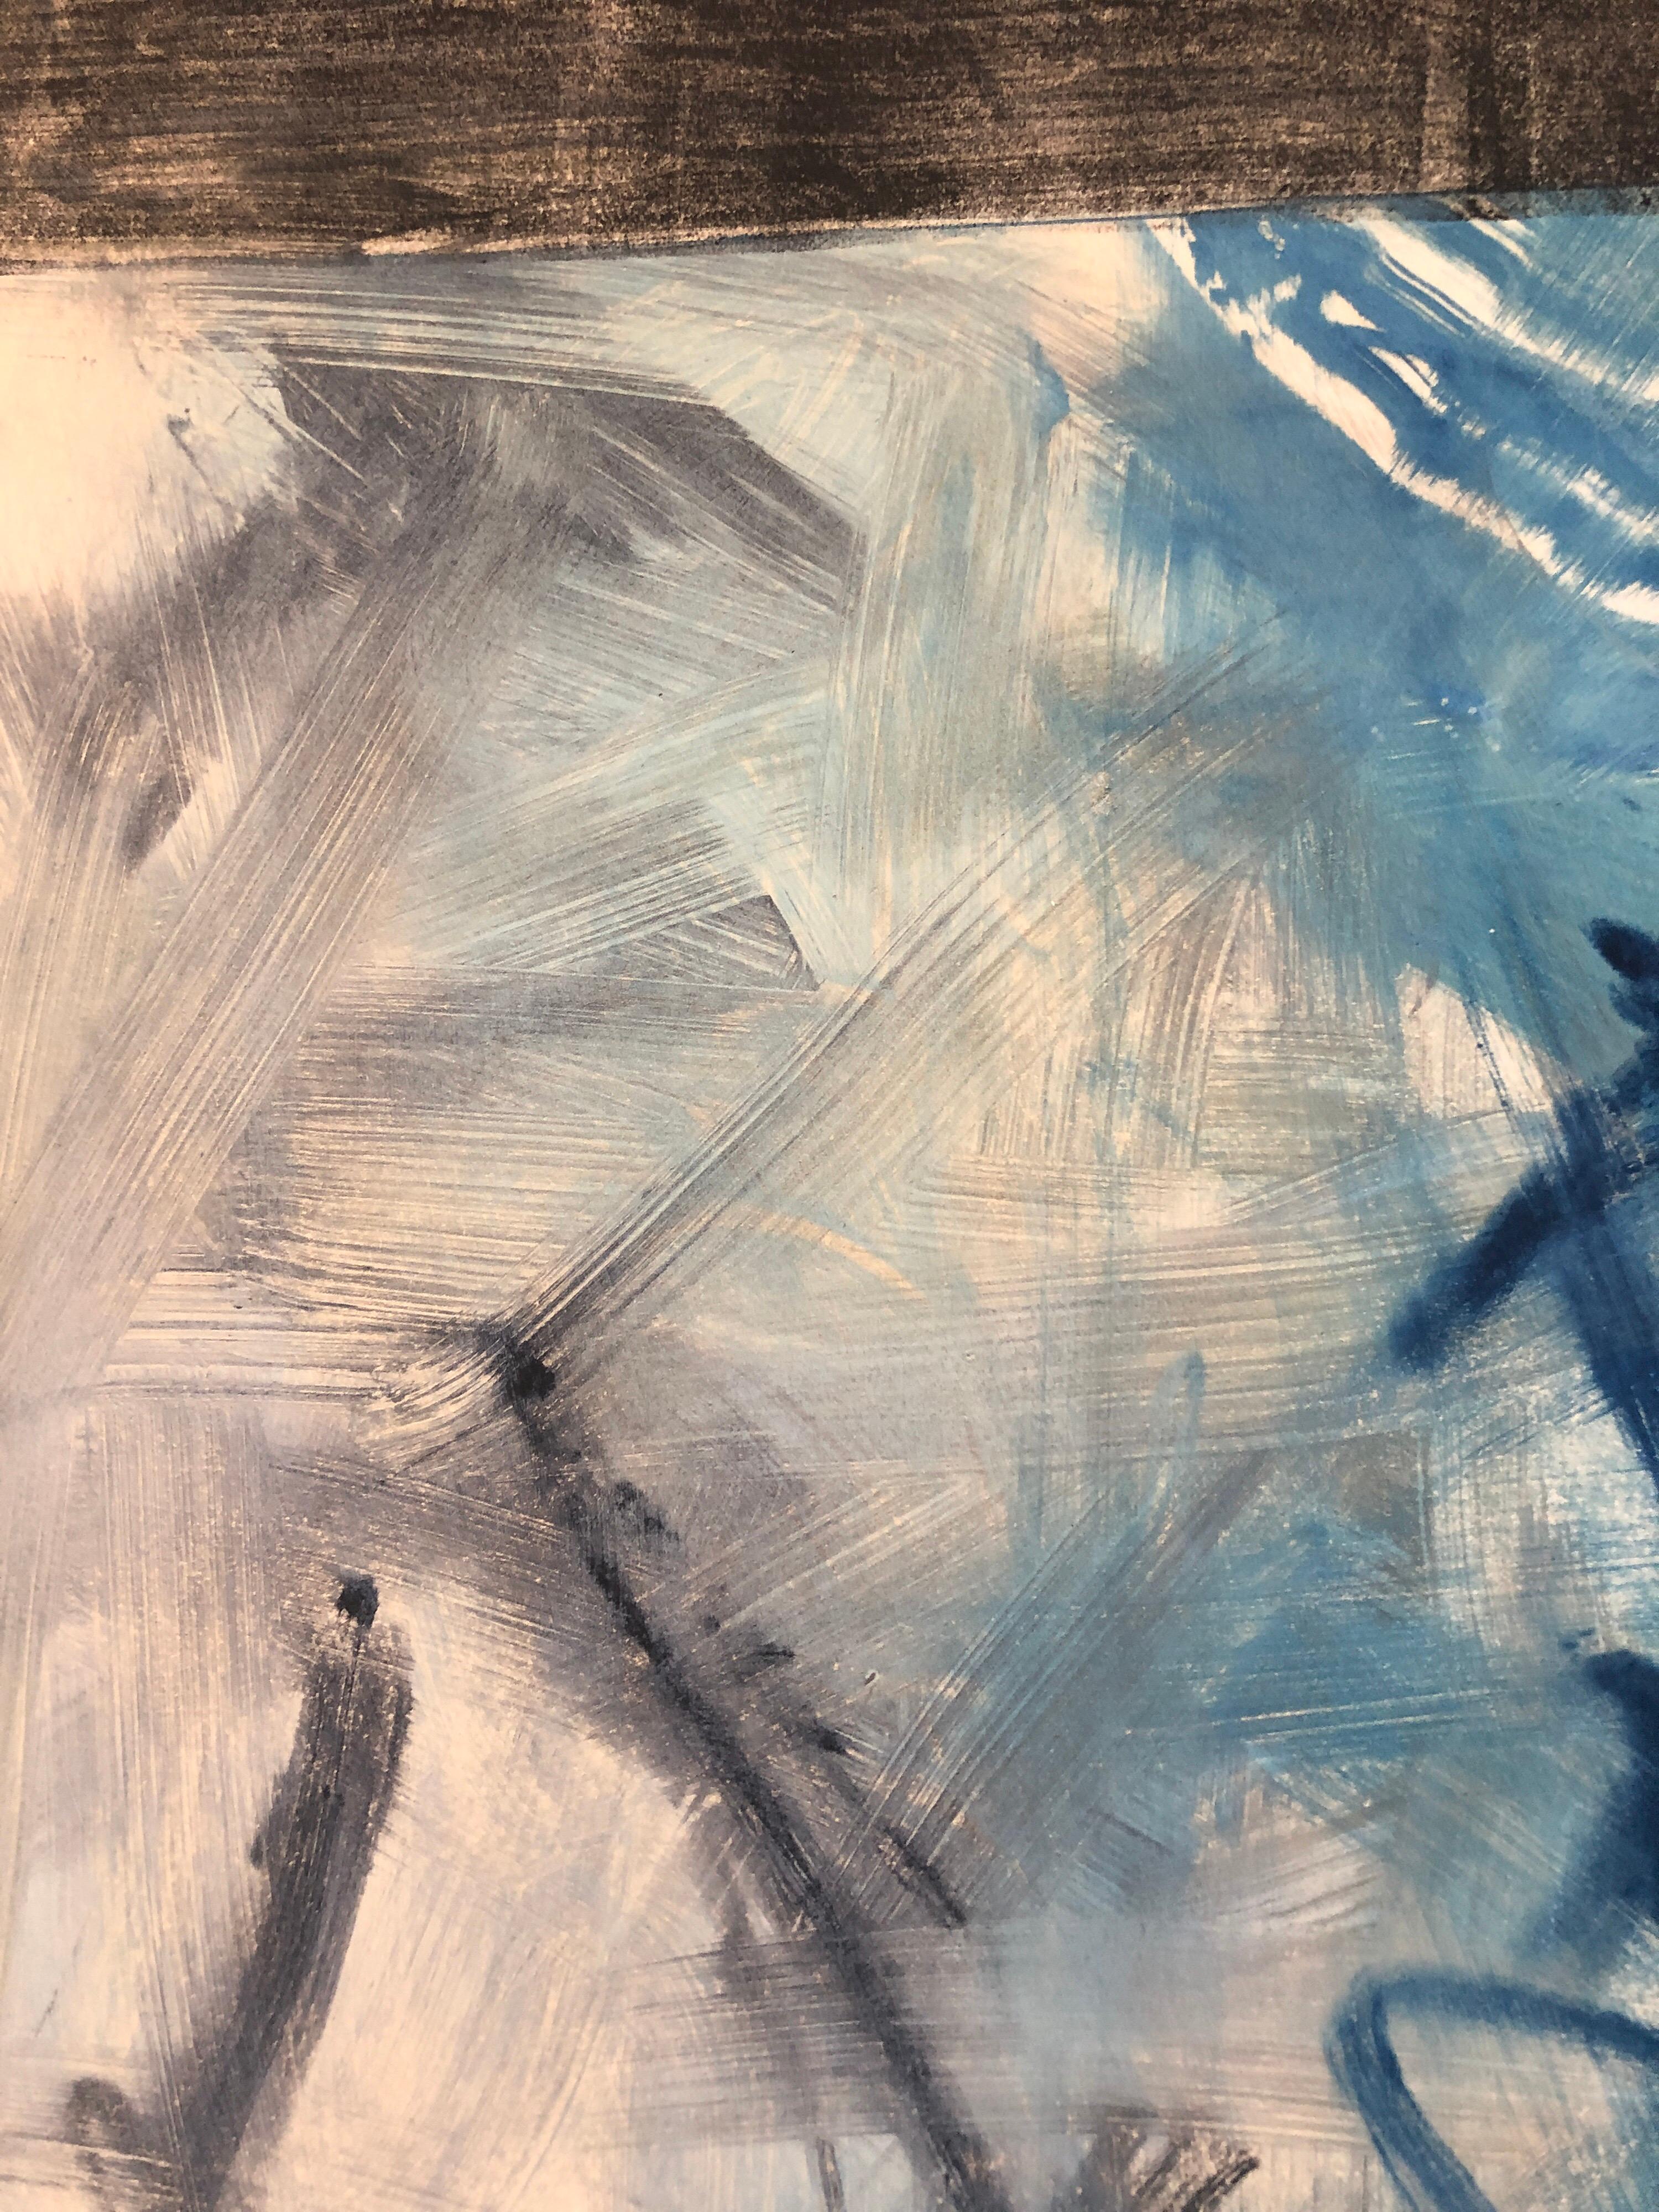 Abstrakt-expressionistischer modernistischer blau-grauer Monodruck Monotypie-Gemäldedruck (Abstrakter Expressionismus), Painting, von Pierre Obando